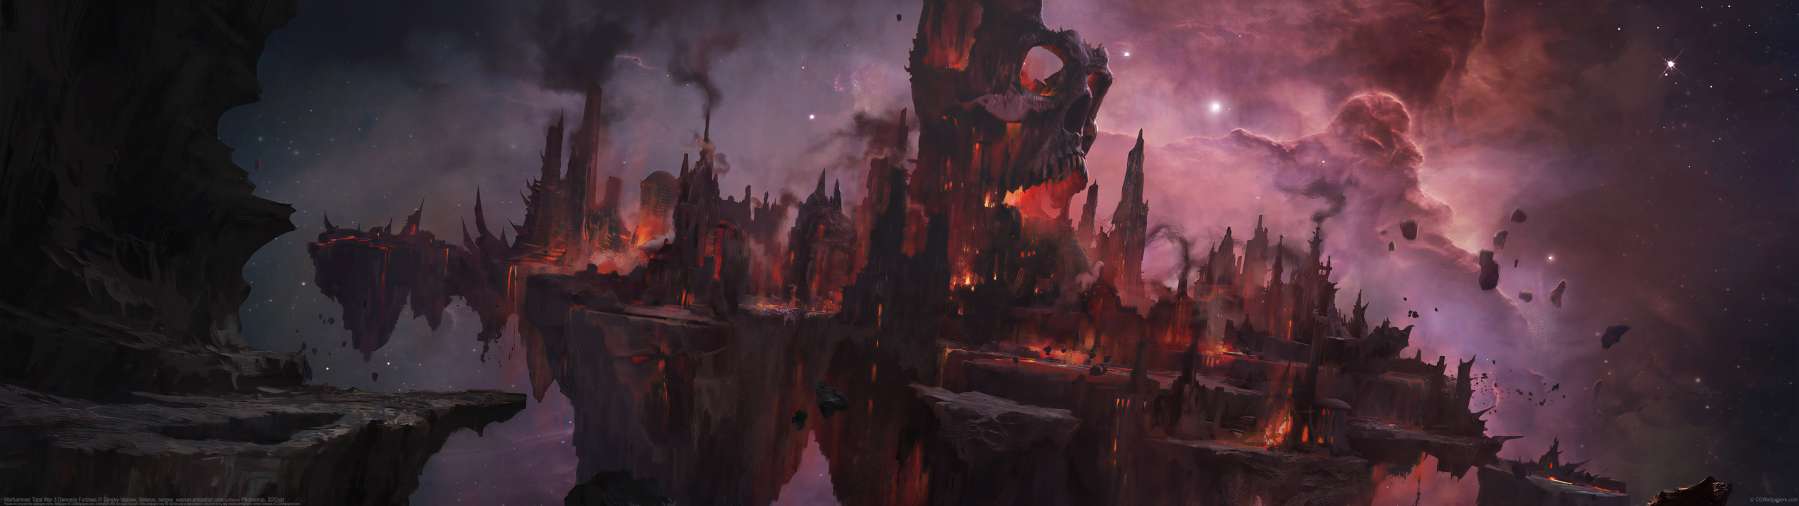 Warhammer Total War 3 Demonic Fortress ultrawide wallpaper